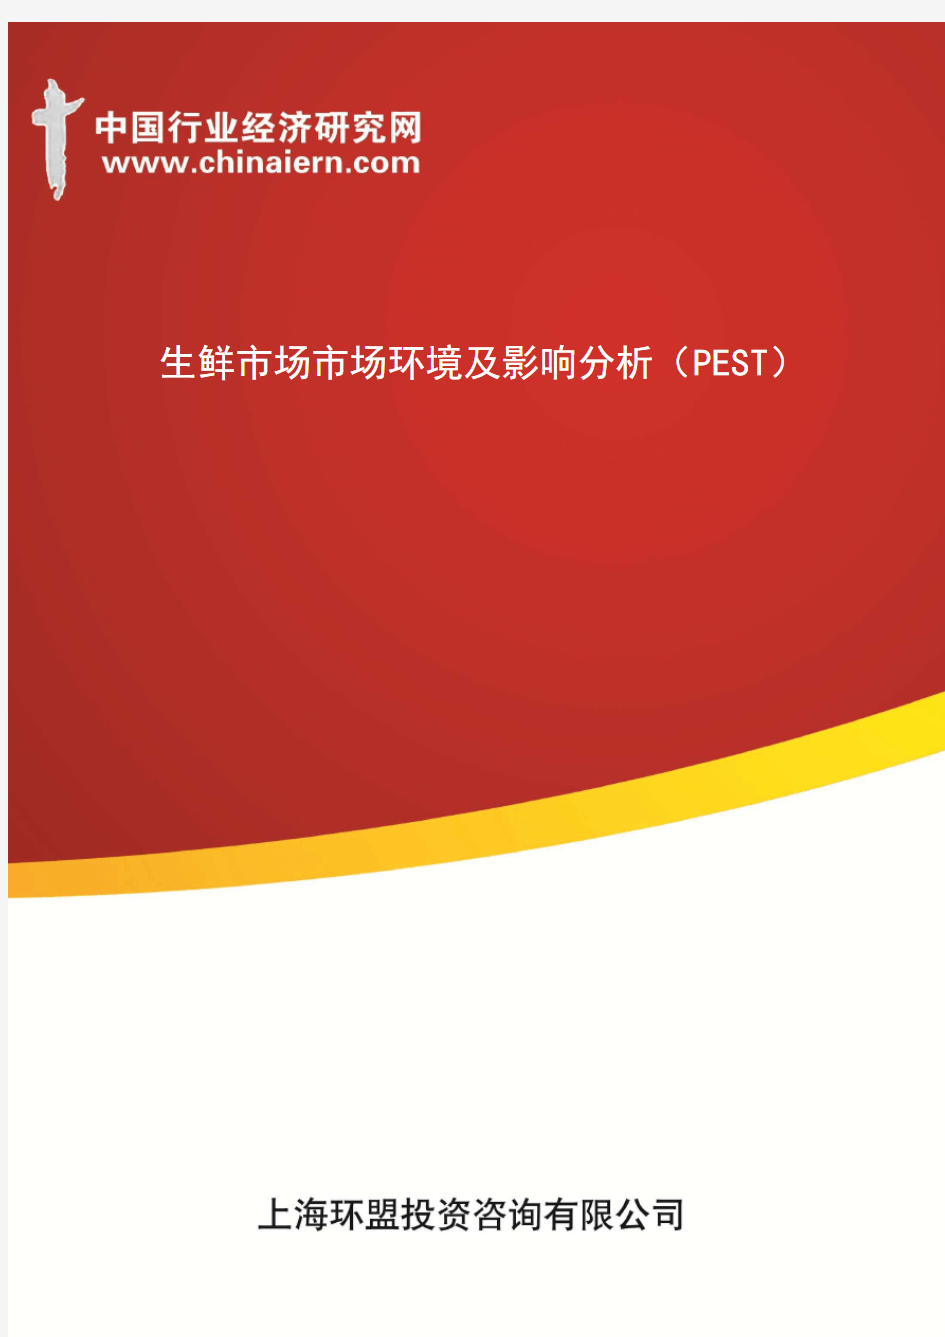 生鲜市场市场环境及影响分析(PEST)(上海环盟)